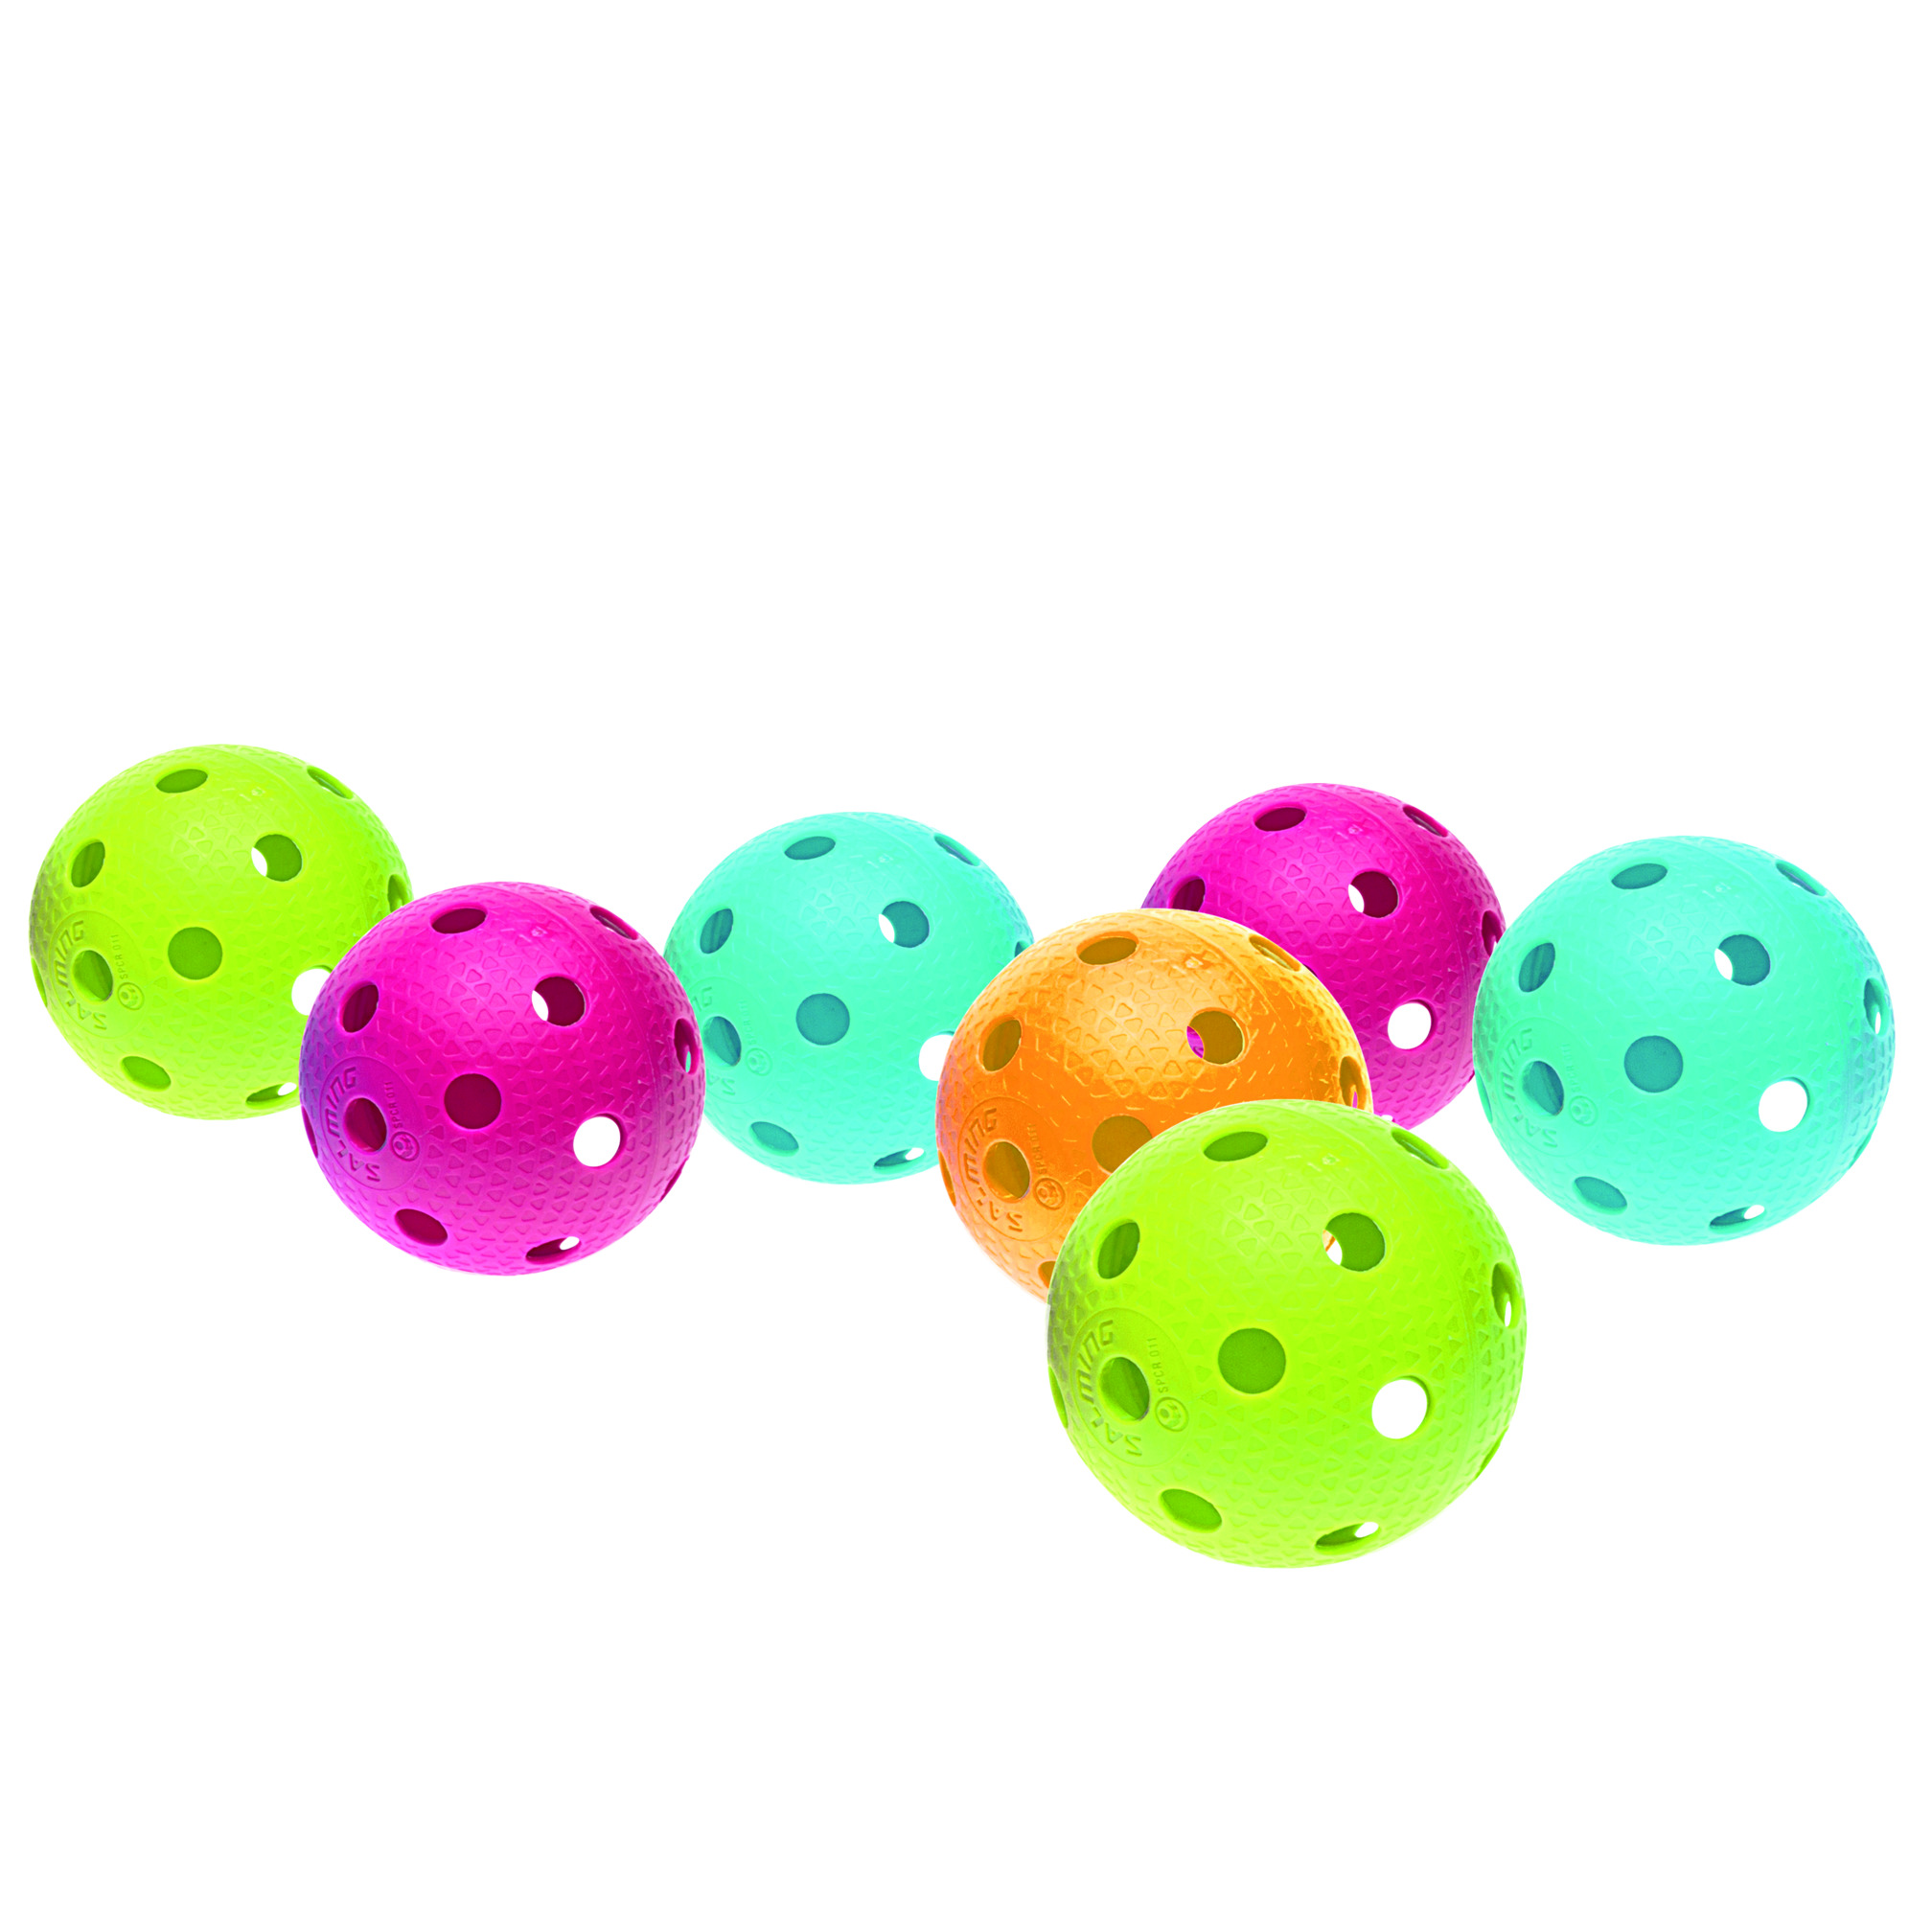 Gatenbal floorball/ pickleball hard, gekleurd